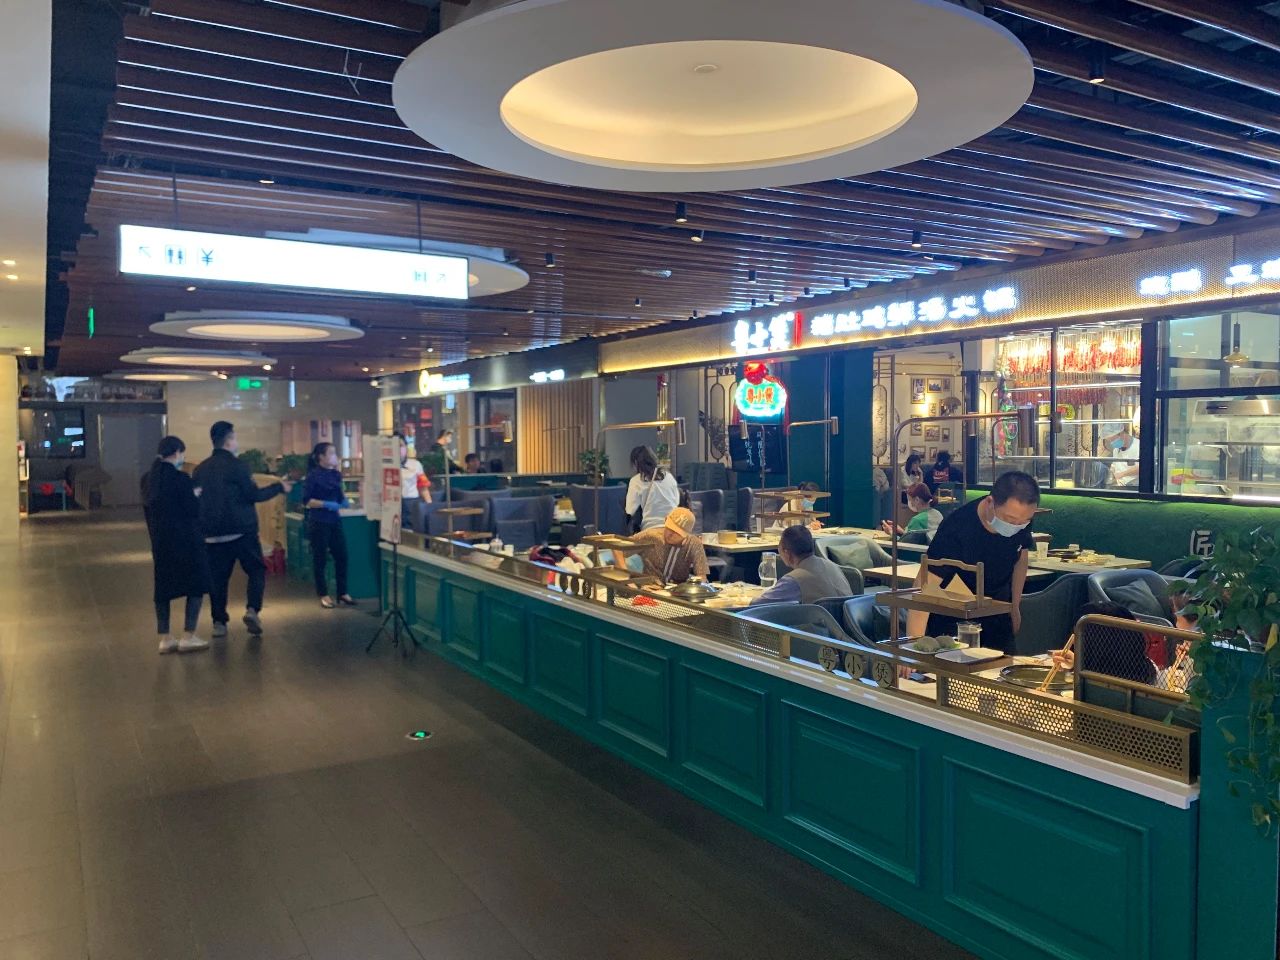 恢复堂食近50张图片展现郑州购物中心餐饮现状